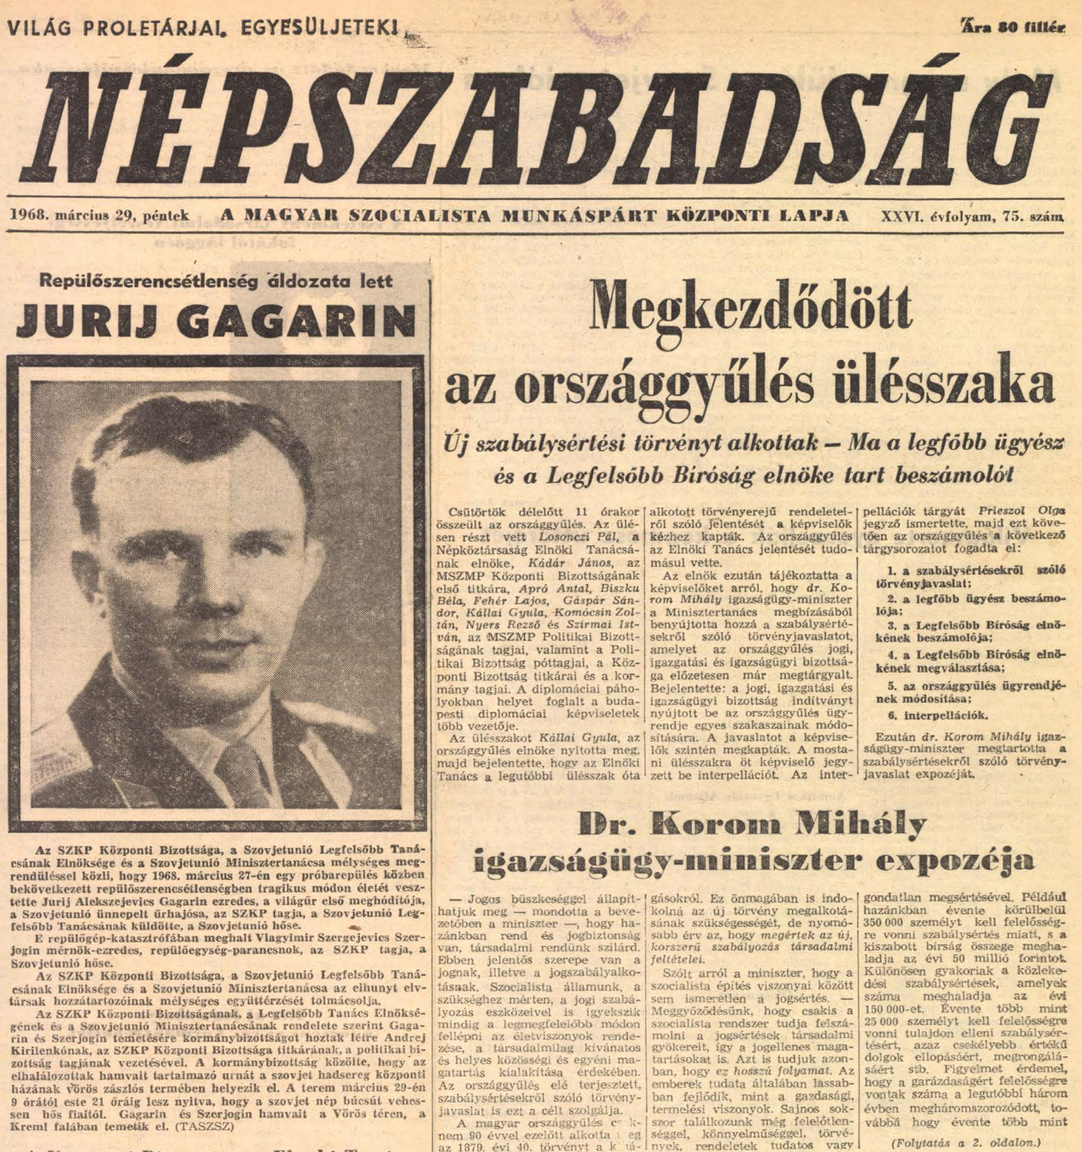 Gagarin halálhíre a Népszabadság címlapján.